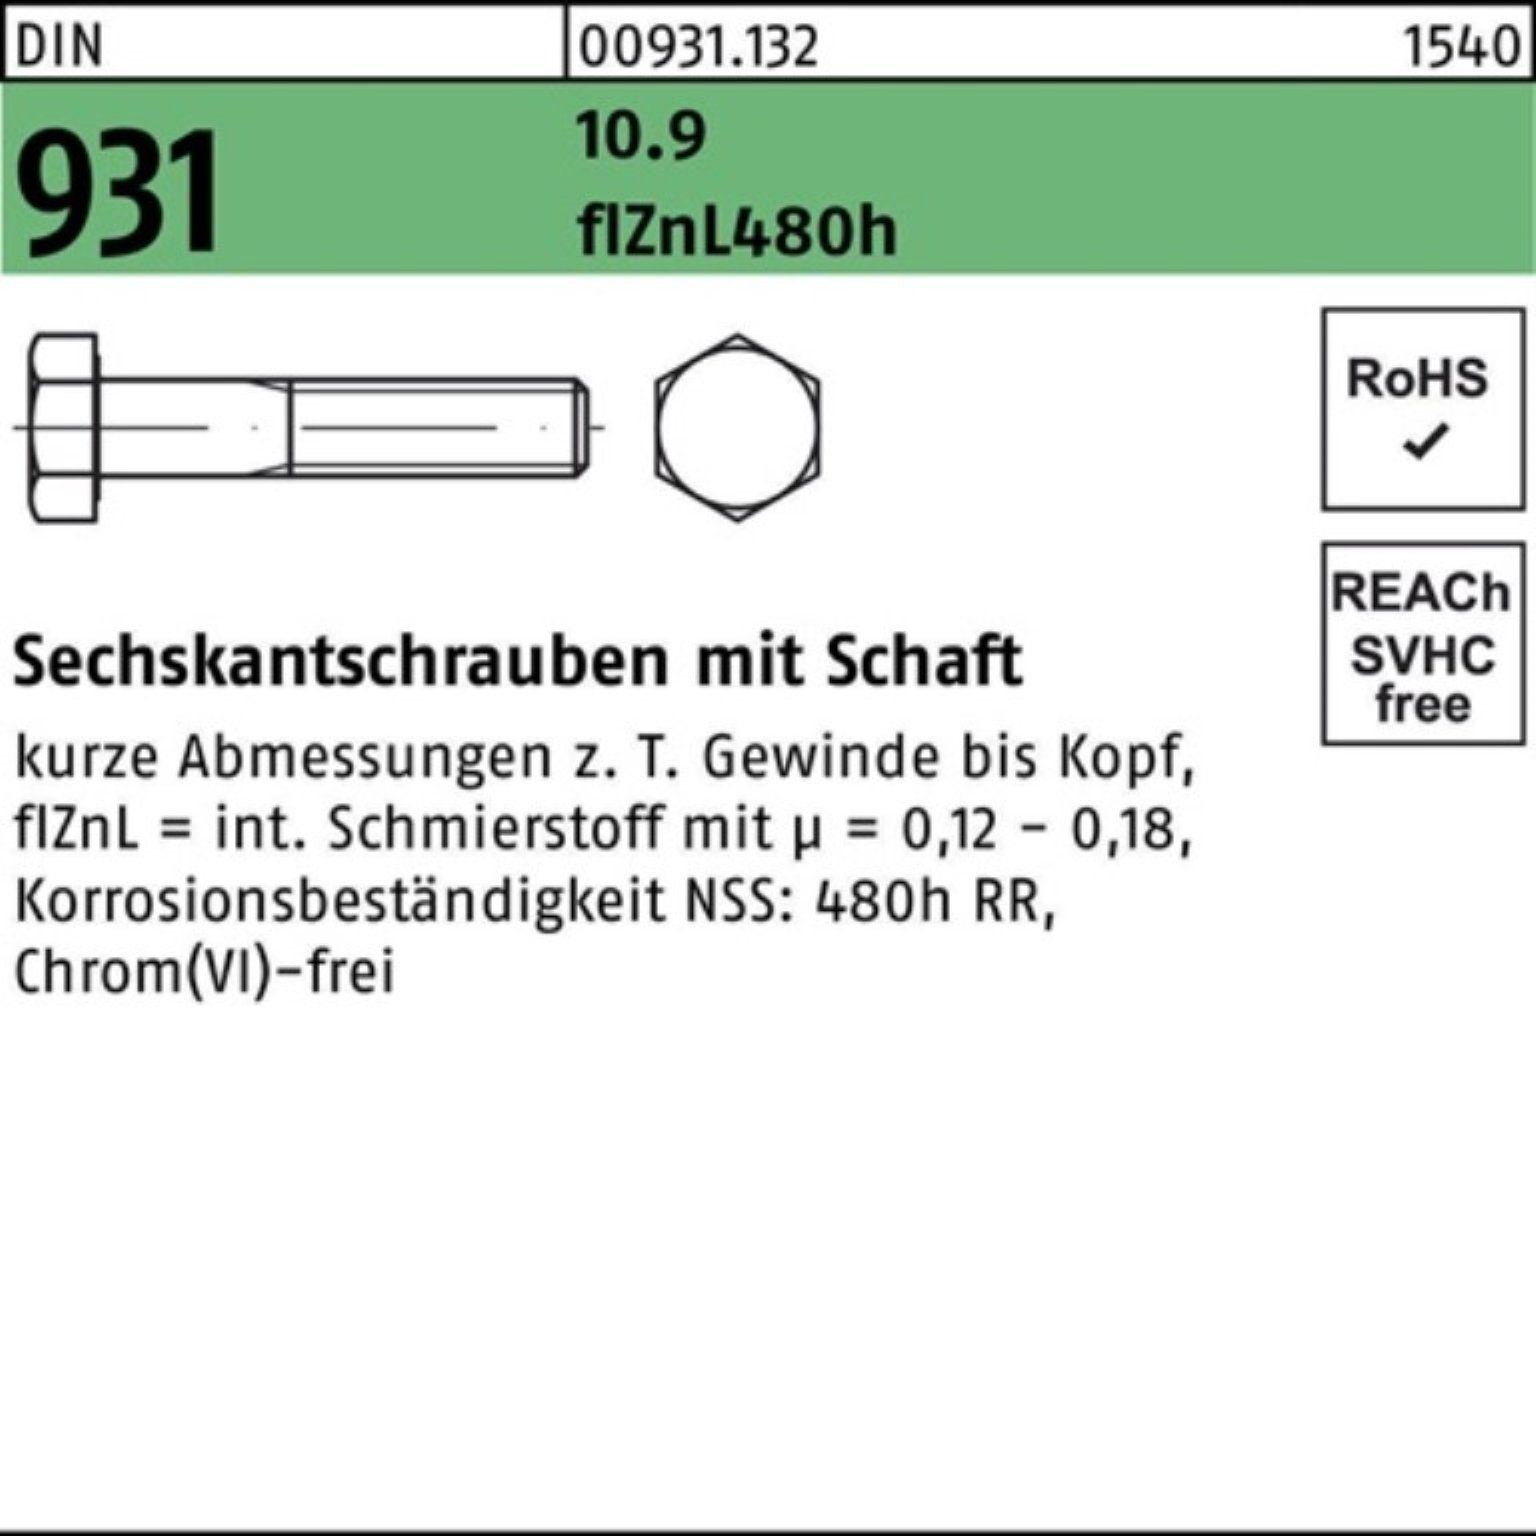 Pack 931 500er 30 Sechskantschraube Schaft Sechskantschraube Reyher flZnL/nc/x/x/4 M6x DIN 10.9